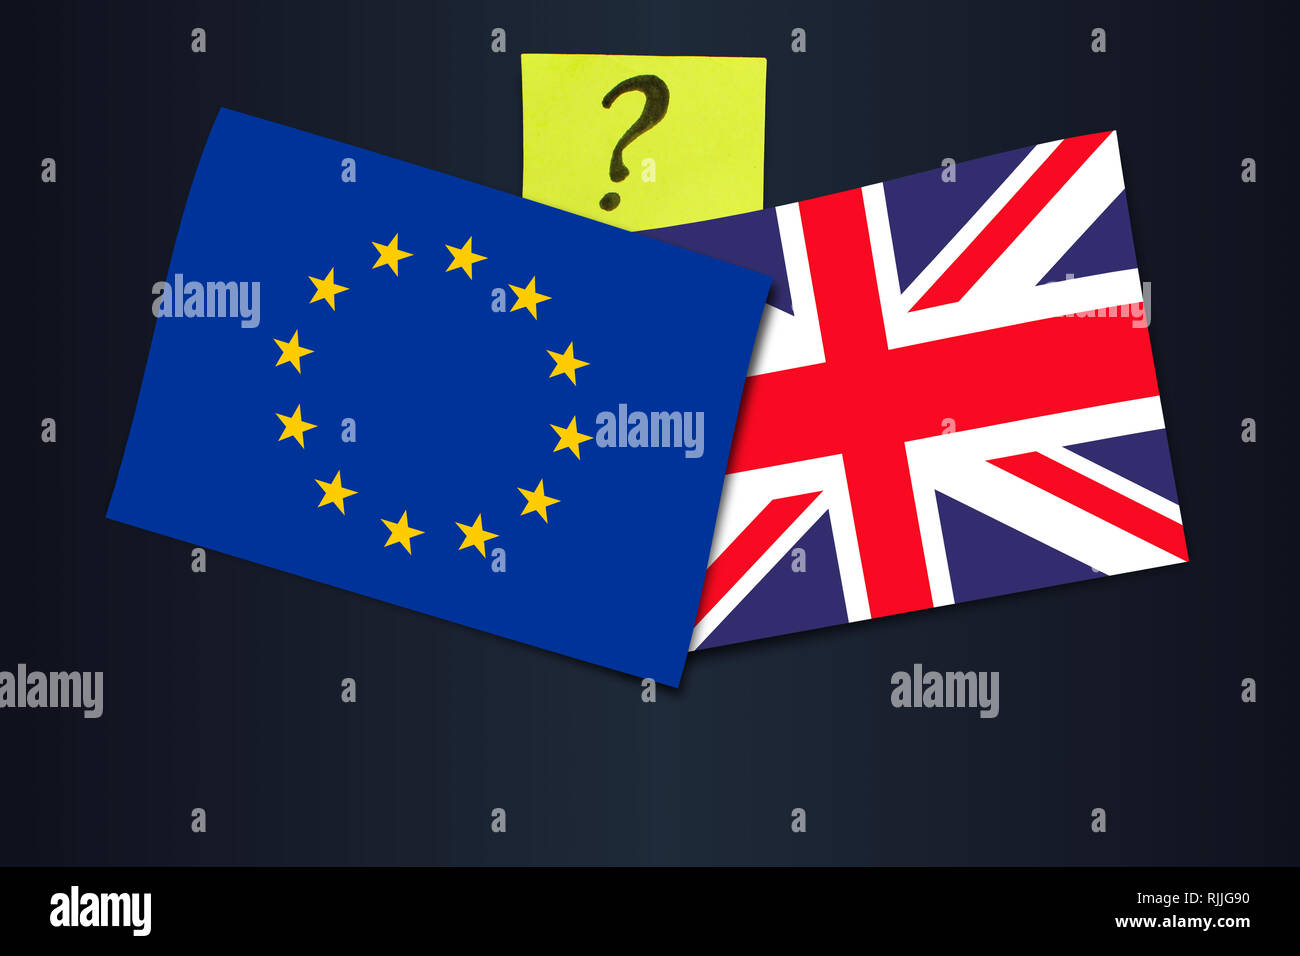 Brexit Deal Abstimmung - Flagge von dem Vereinigten Königreich und der Europäischen Union Stockfoto